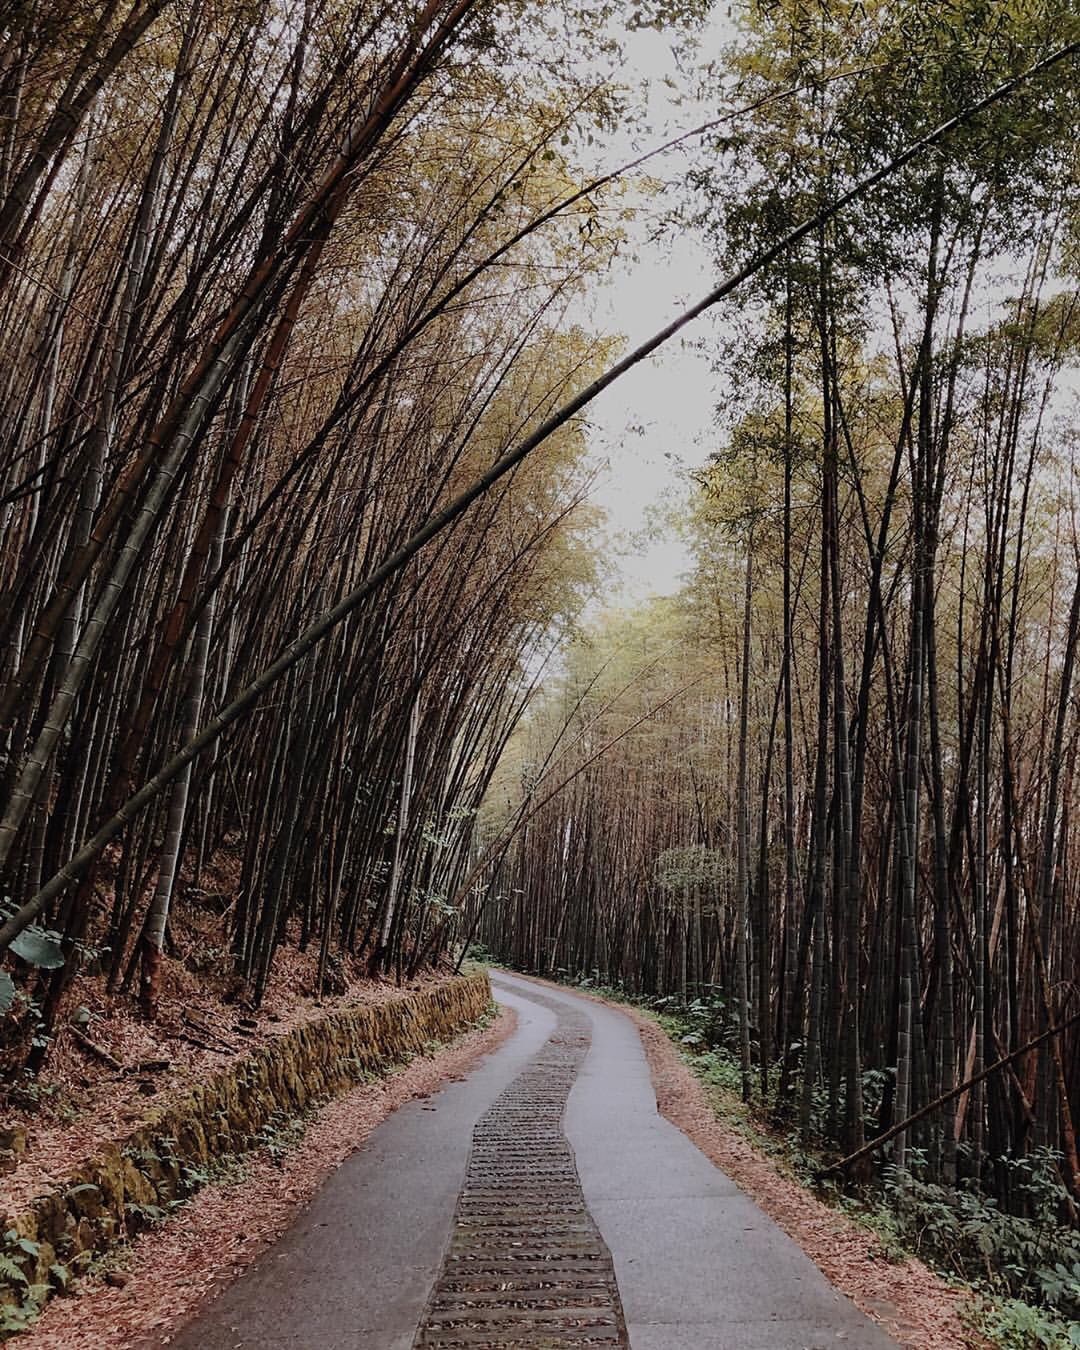 阿里山的竹林步道就像功夫熊貓的場景一樣-感謝 @captain_kerry 提供超棒照片- #travelalishan 或 @t...